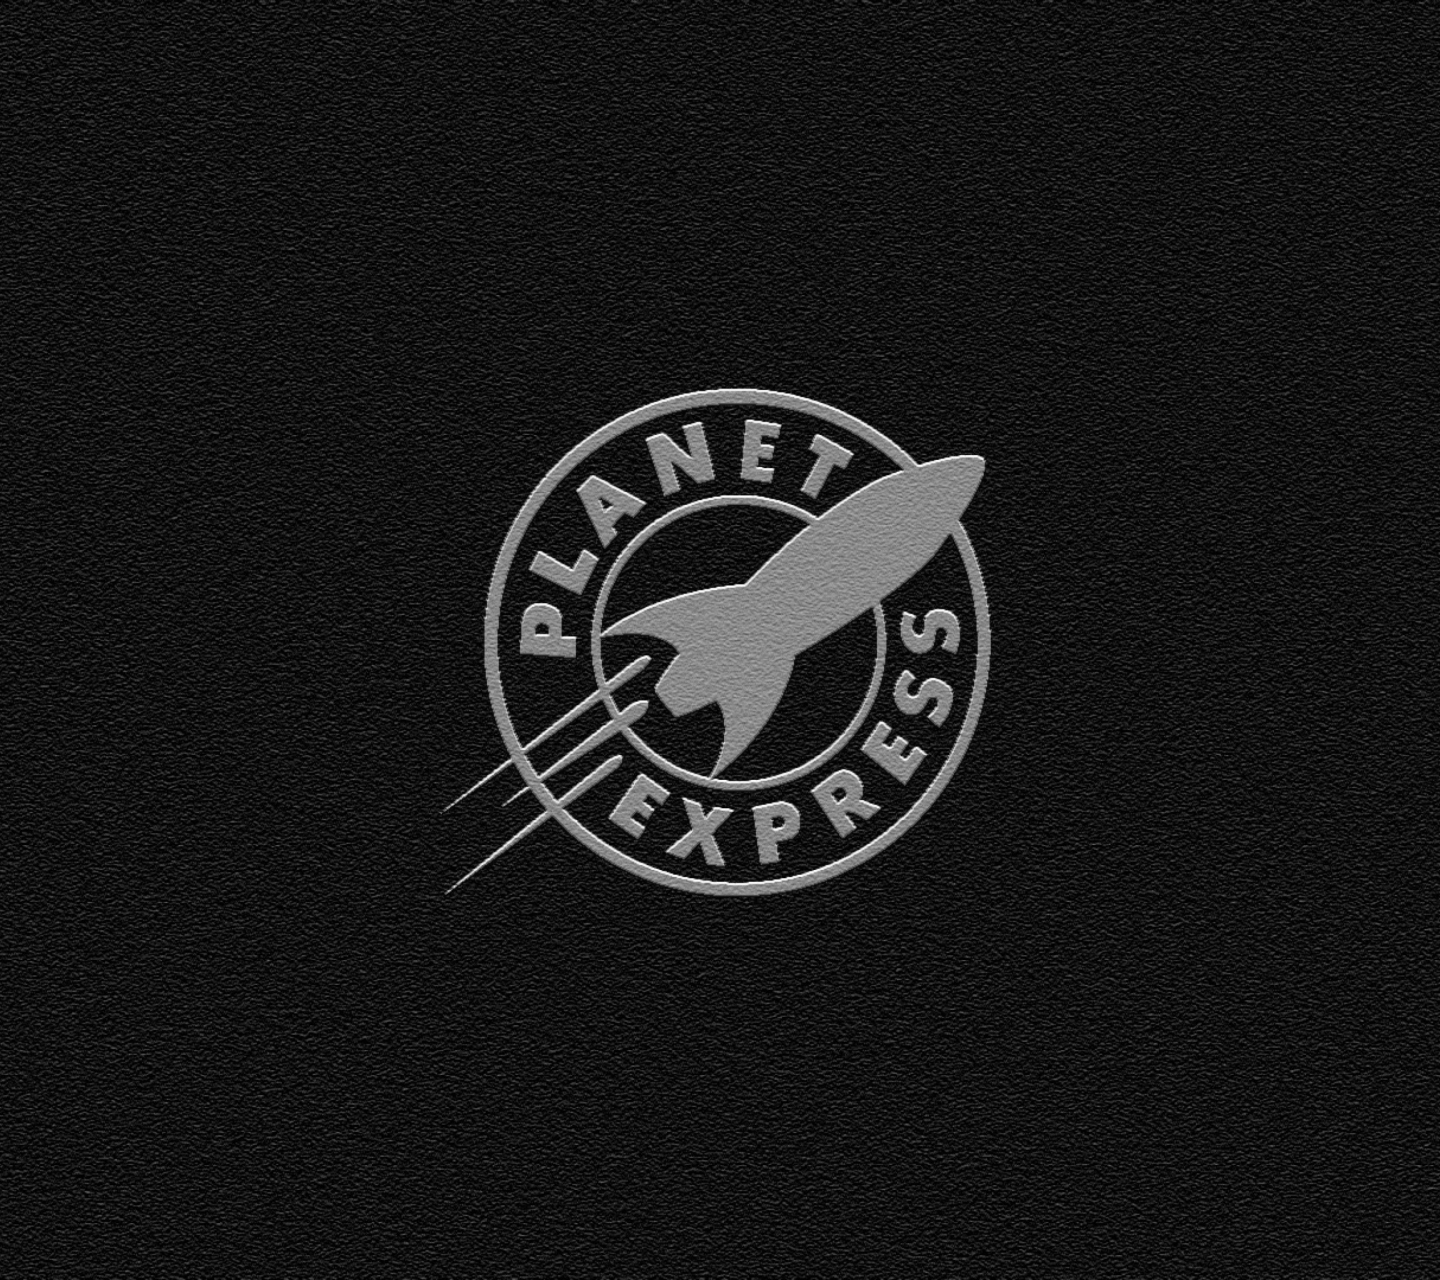 Обои Planet Express 1440x1280